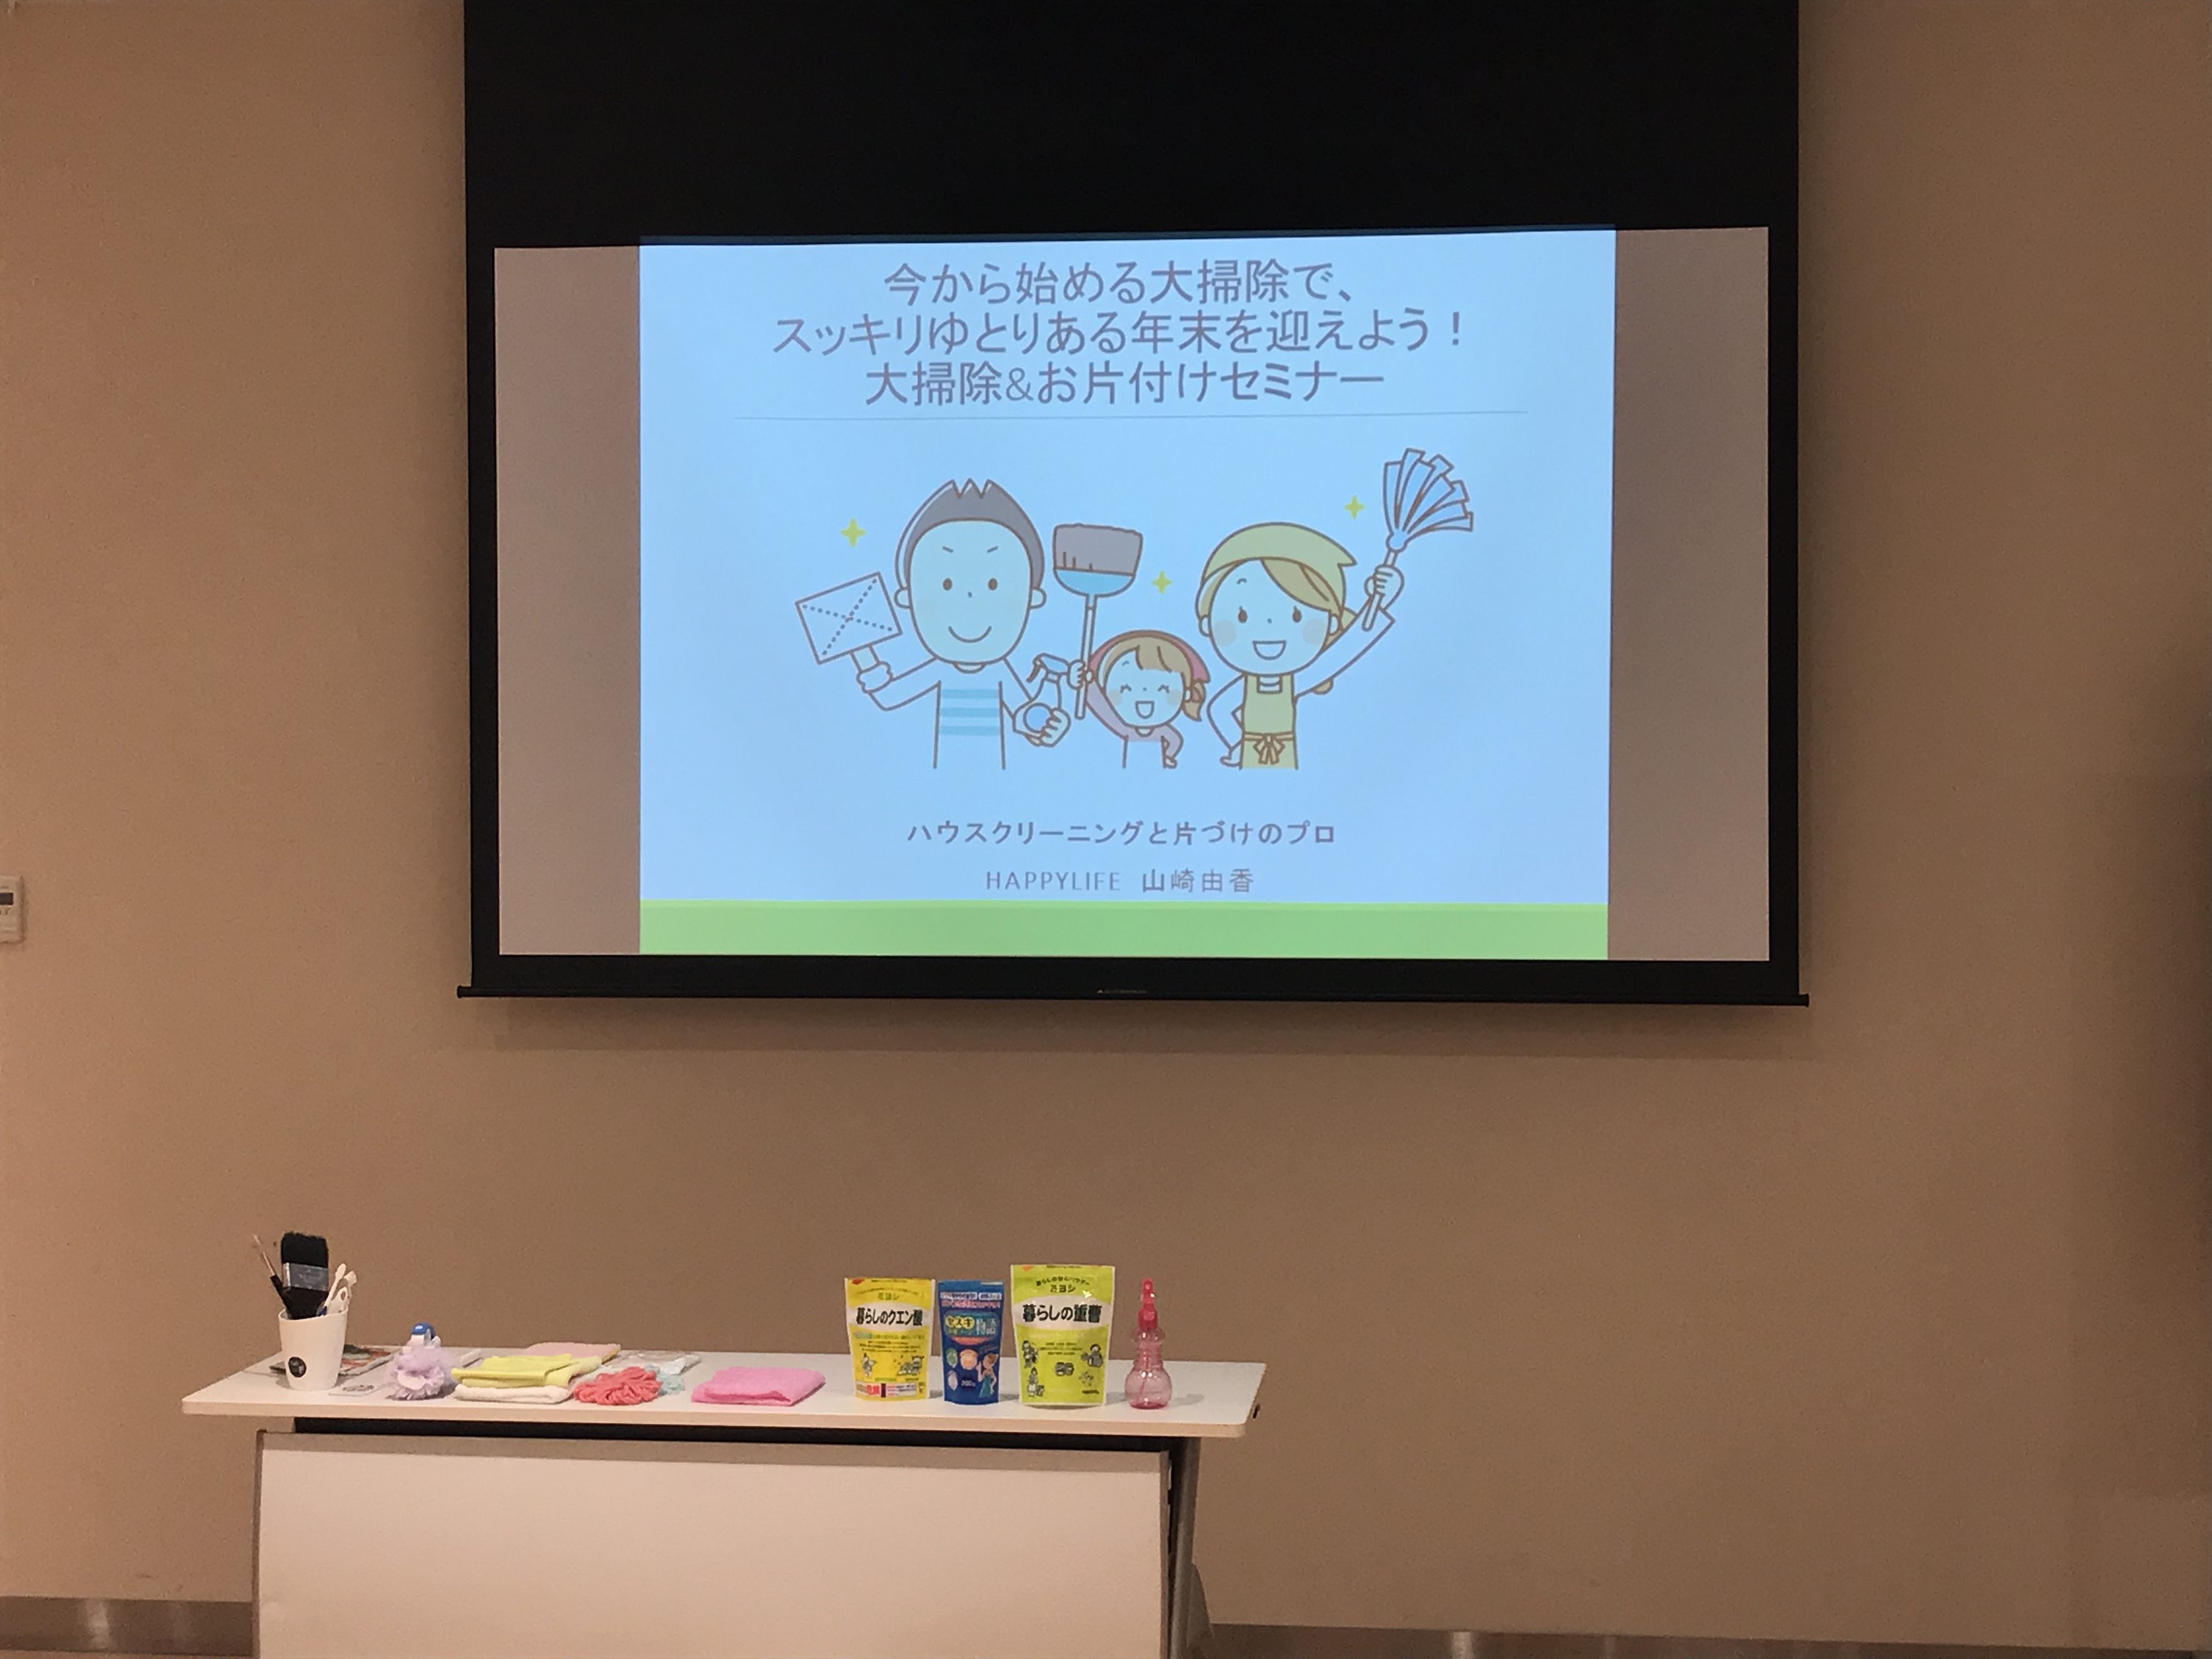 大掃除のコツと片付けセミナーをhdc大阪で開催しました 山崎由香のhappy Lifeブログ